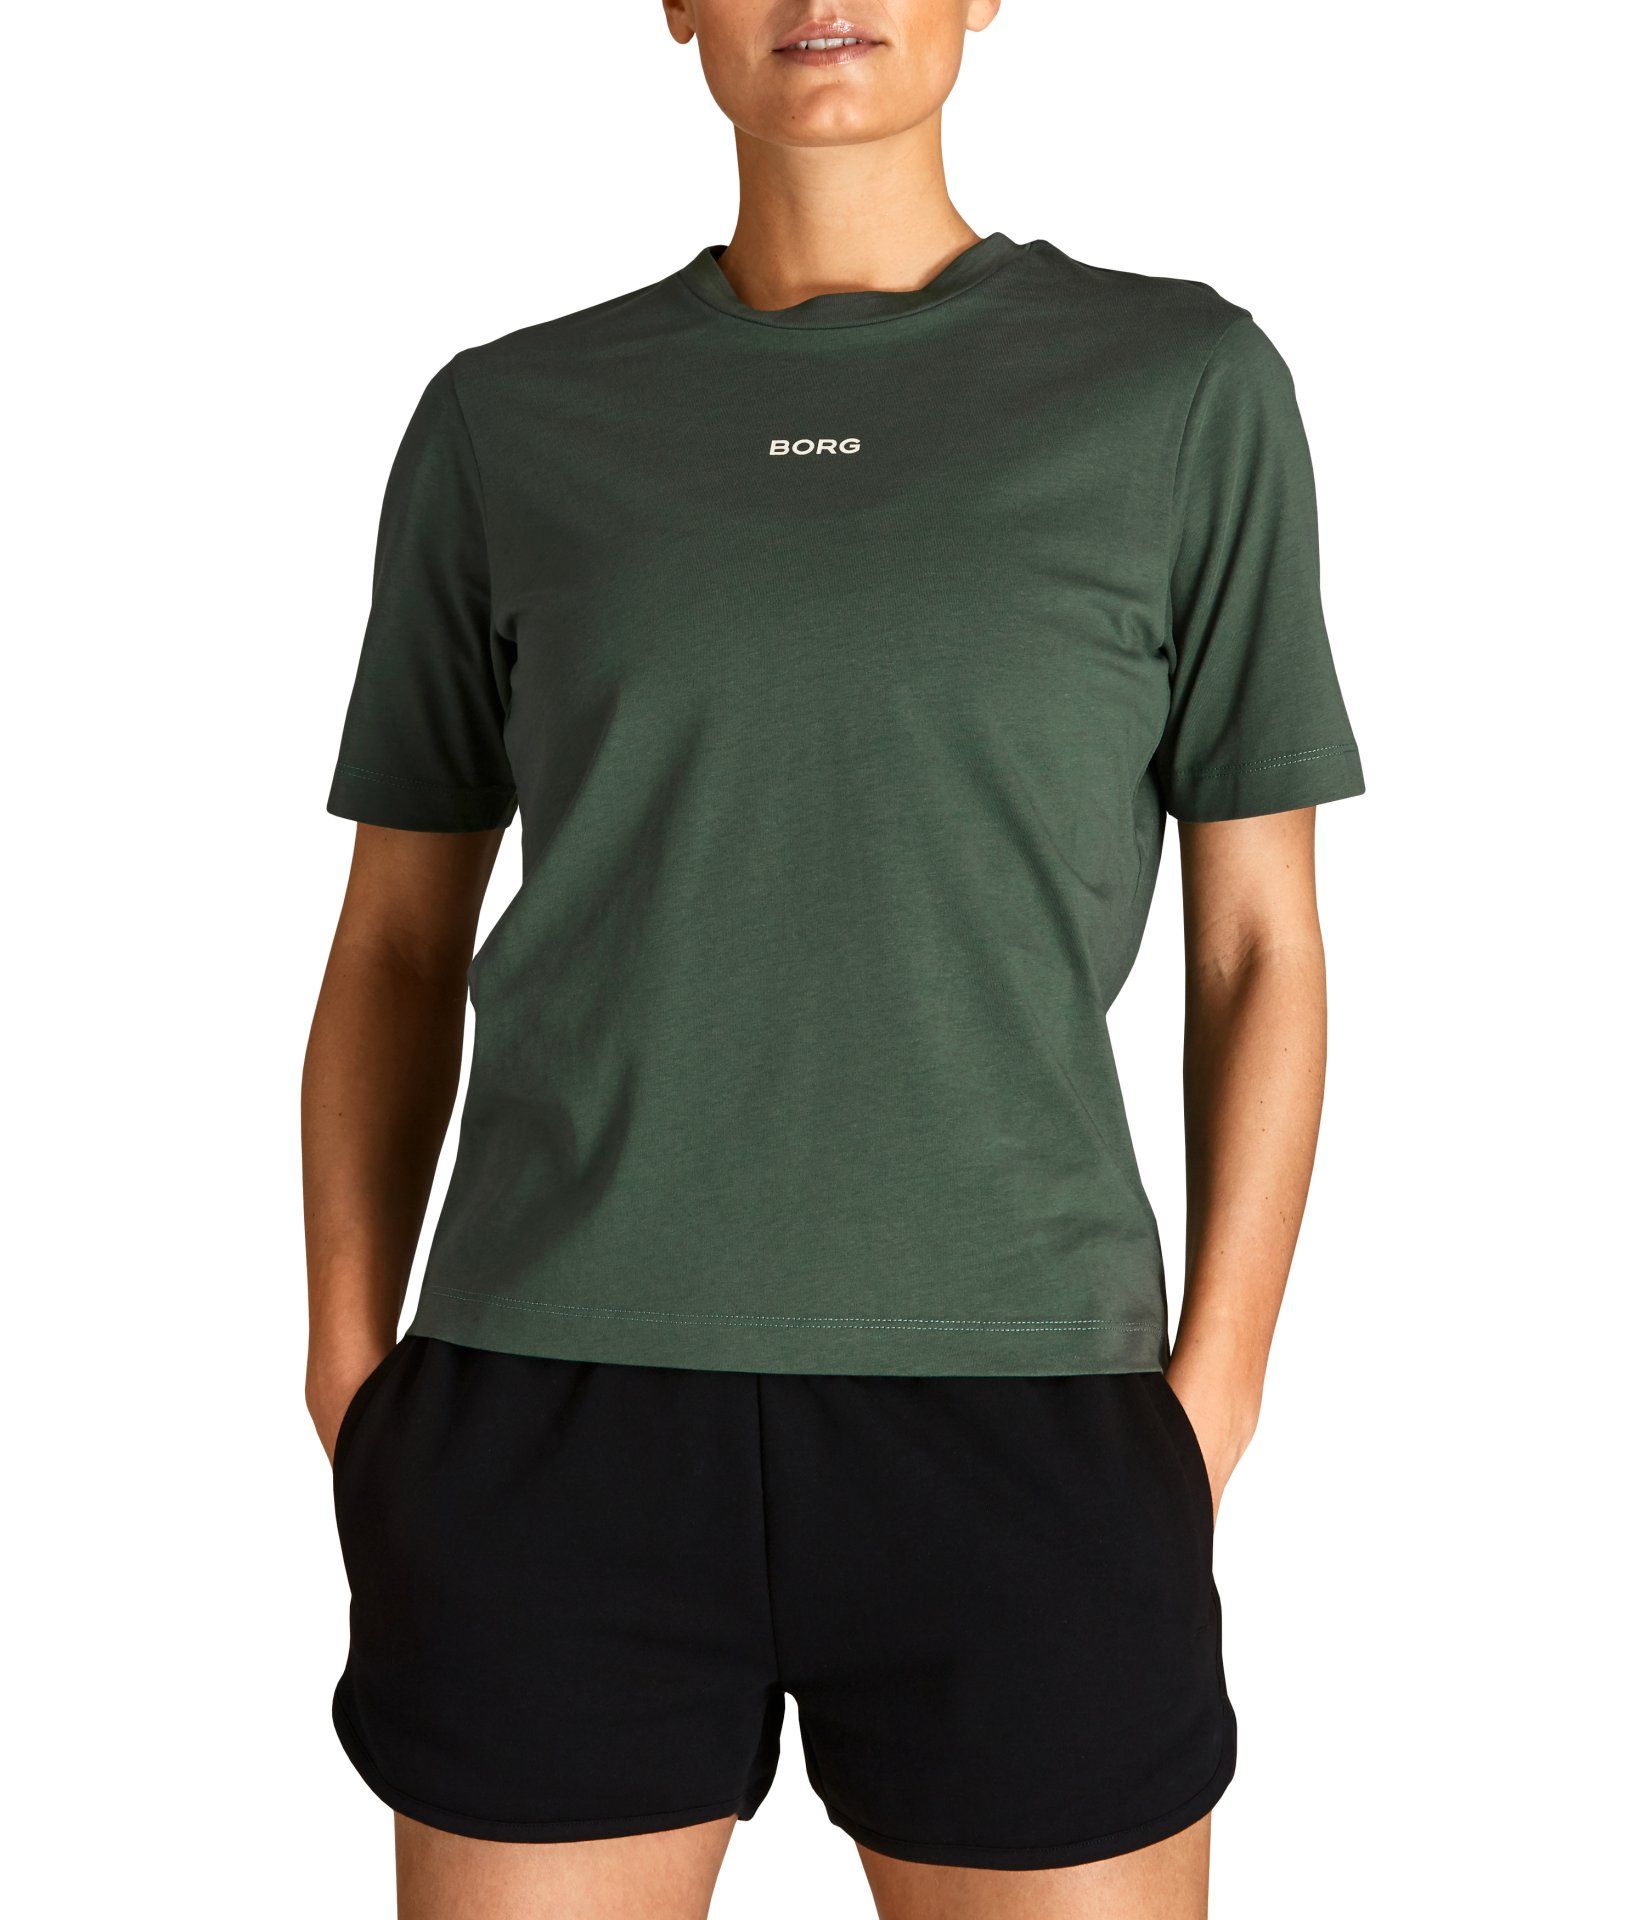 Bemiddelaar Kilometers Annoteren Bjorn Borg logo Regular T-Shirt 2111-1232